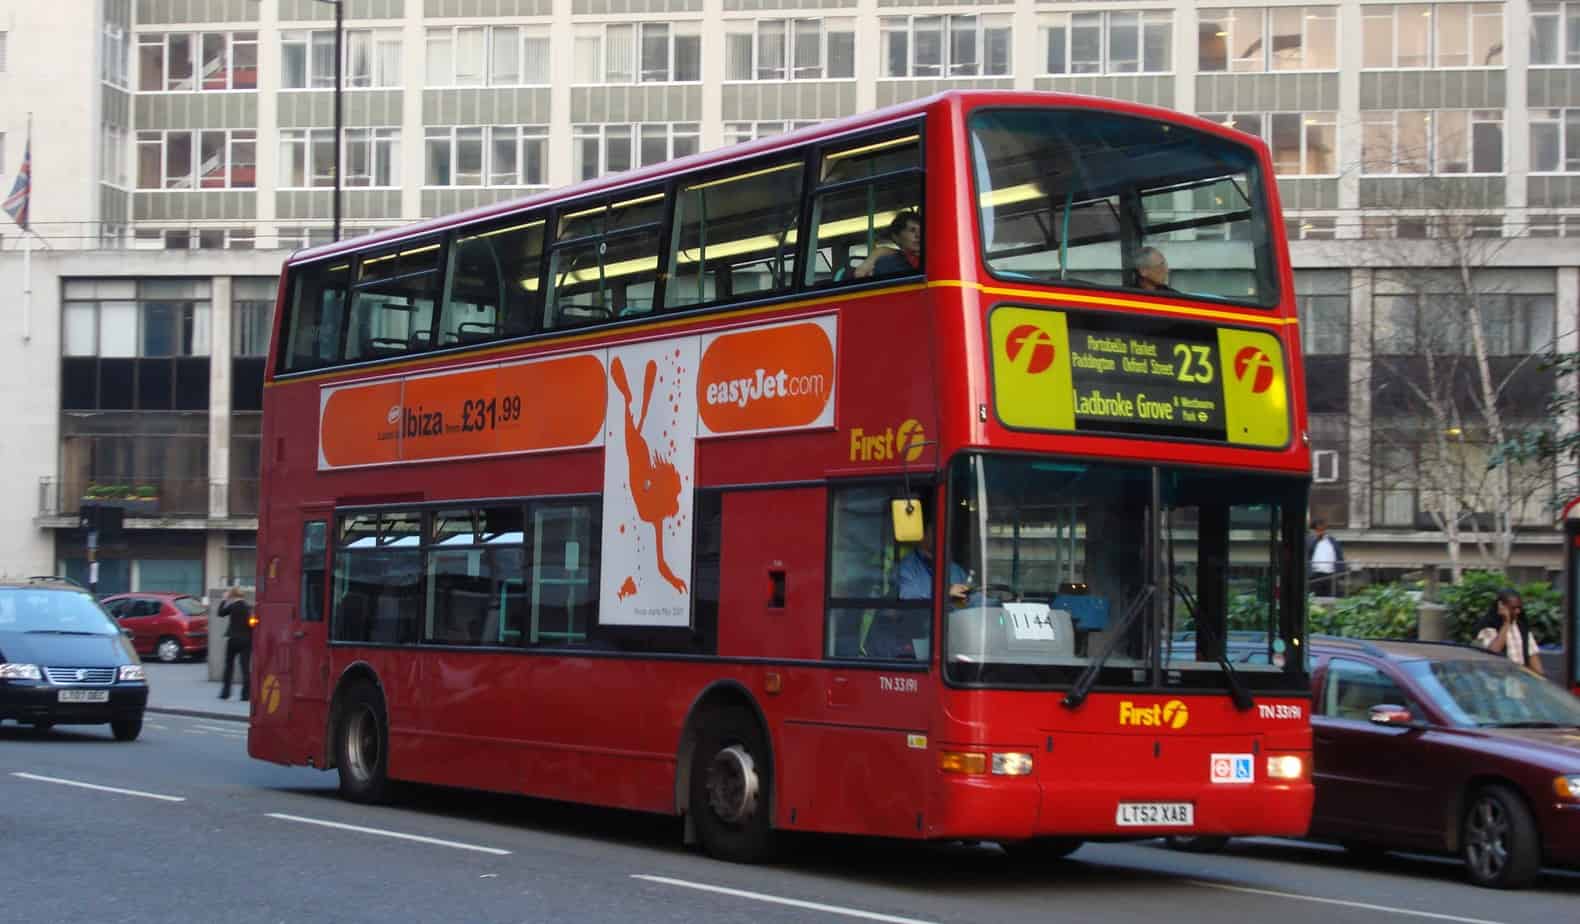 London Bus route 23